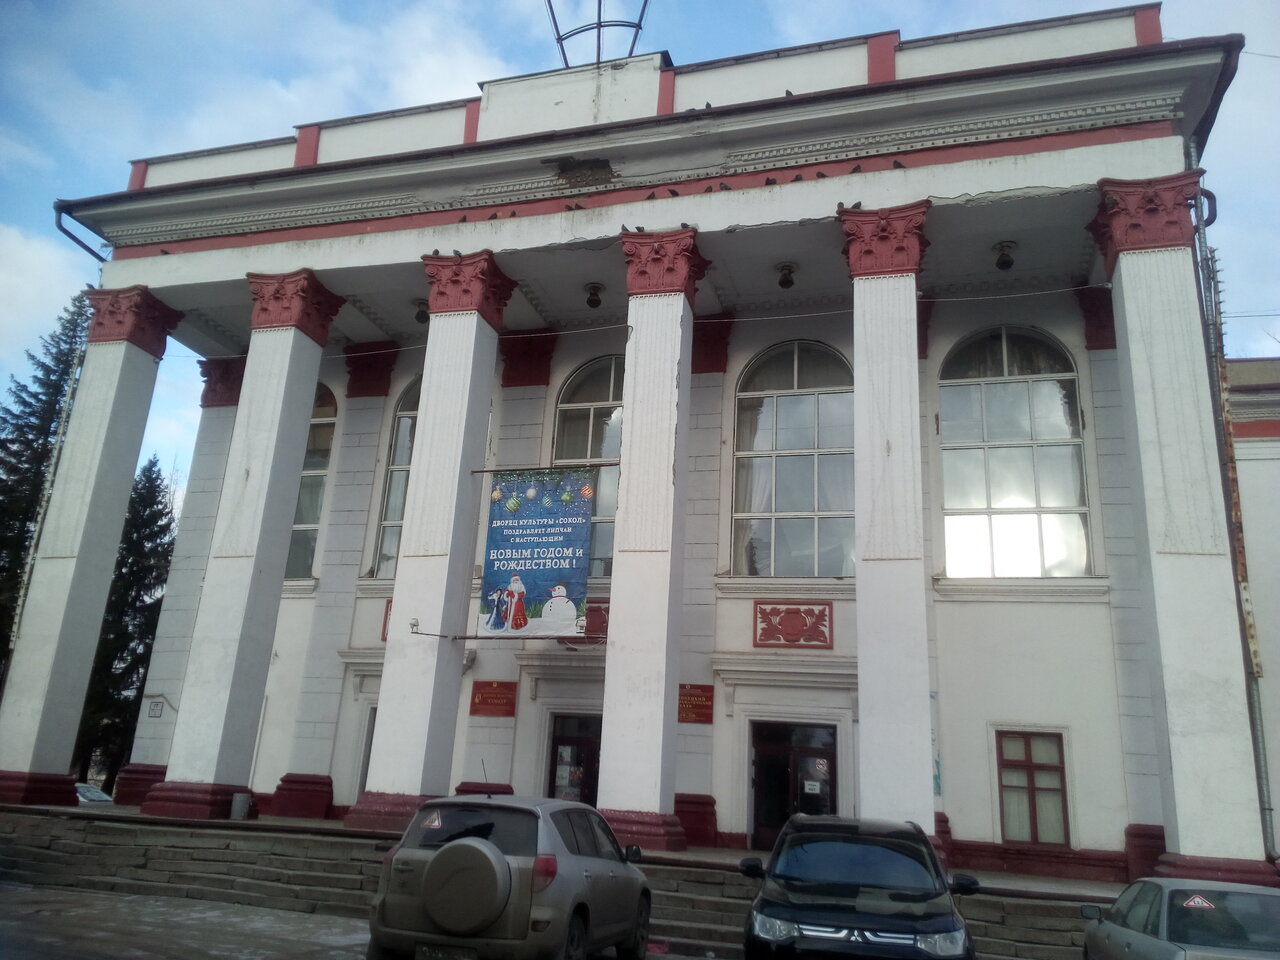 Липецкий драматический театр